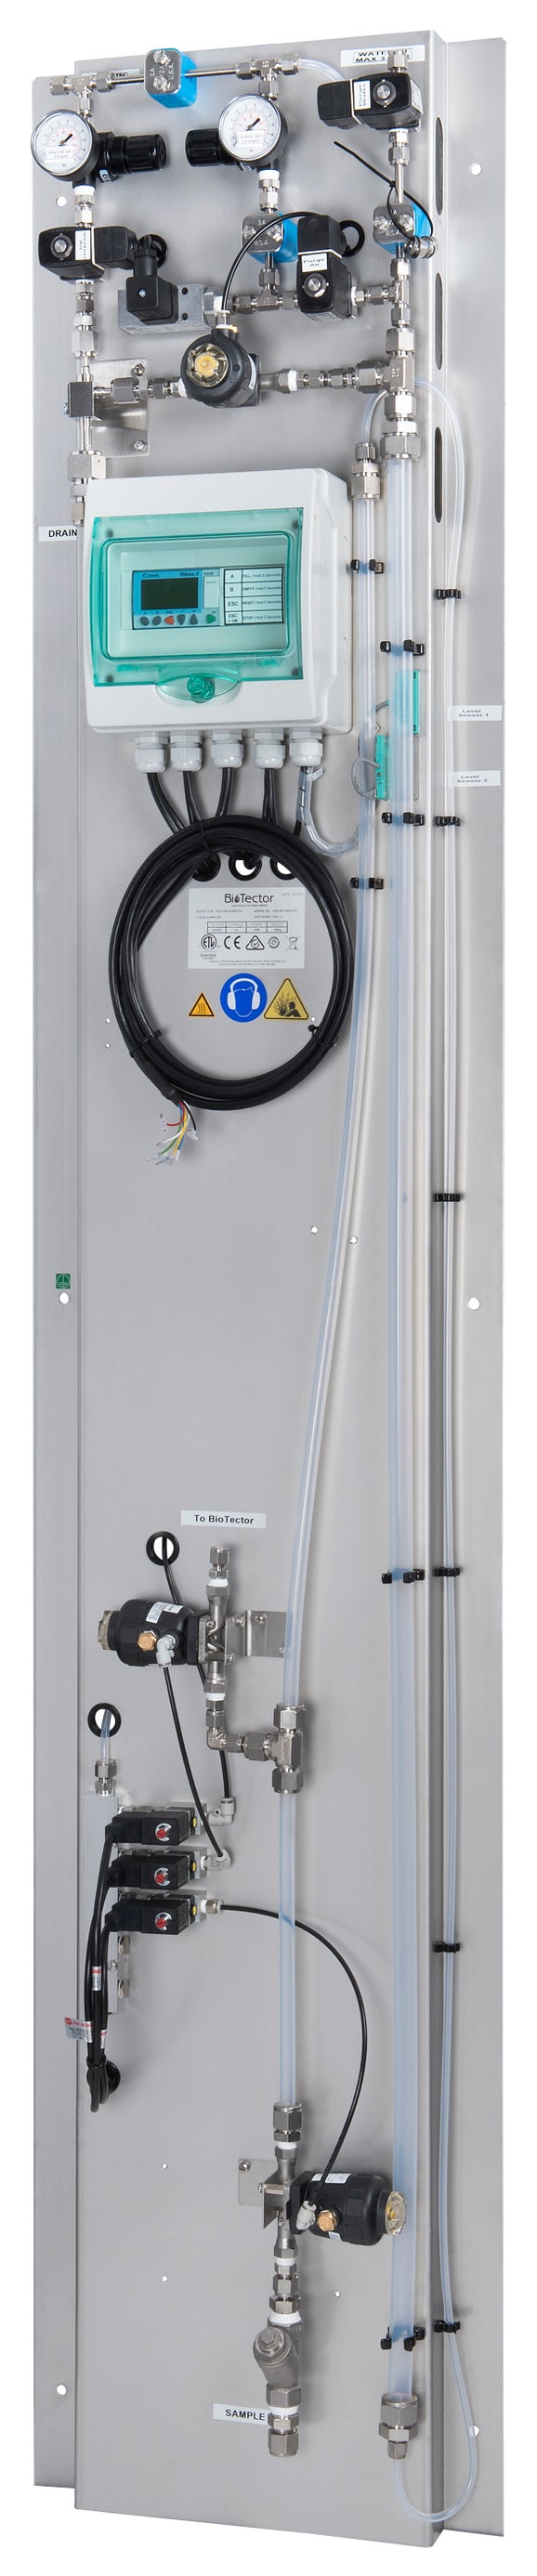 Δειγµατοληπτική συσκευή Venturi µε αέρα και λειτουργία έκπλυσης (3 κανάλια), για τους αναλυτές BioTector B7000/B7000i/B7000i Dairy